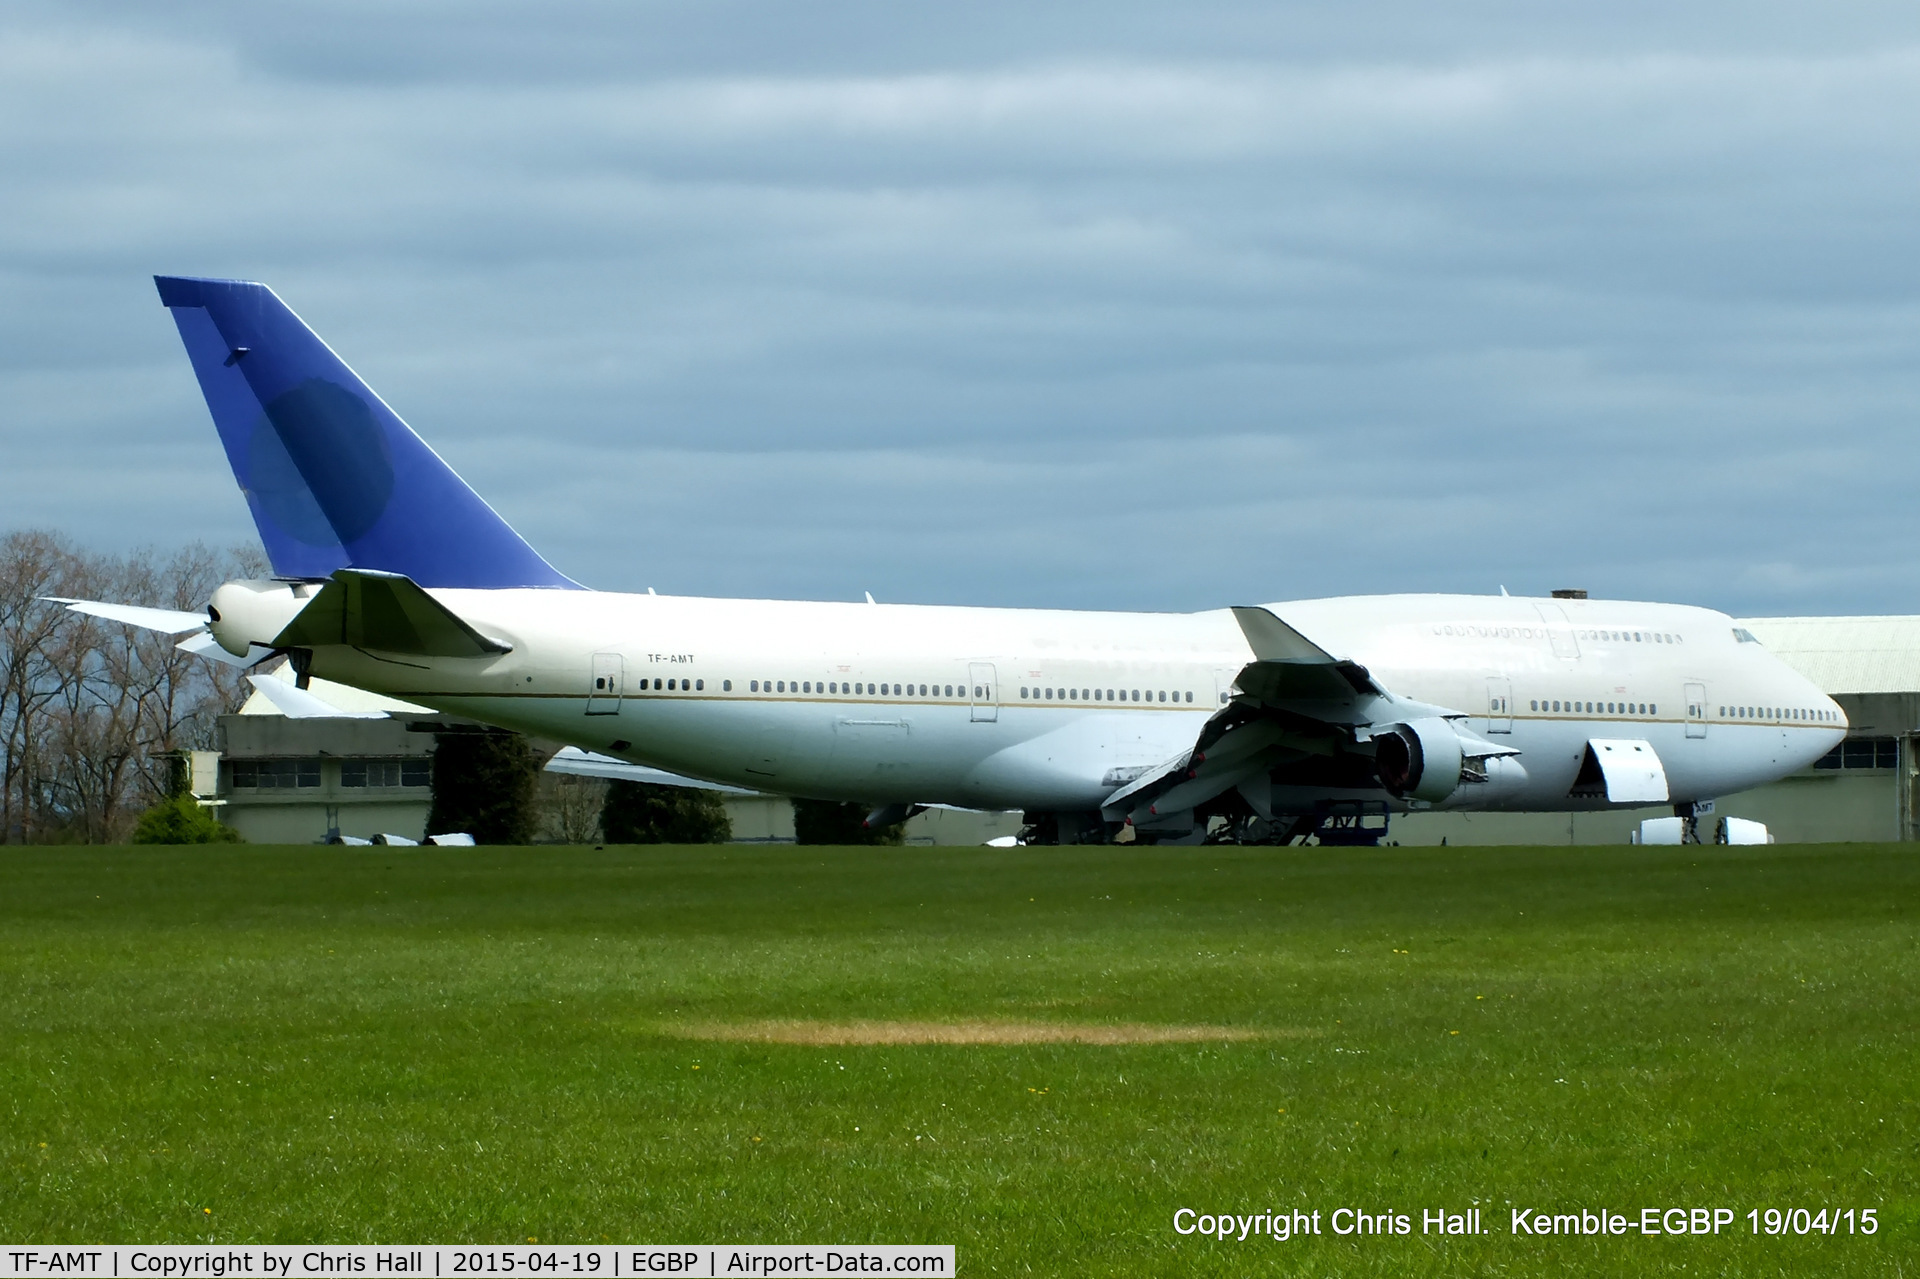 TF-AMT, 1991 Boeing 747-481 C/N 25135, ex Air Atlanta Icelandic/Saudi Arabian Airlines in storage at Kemble